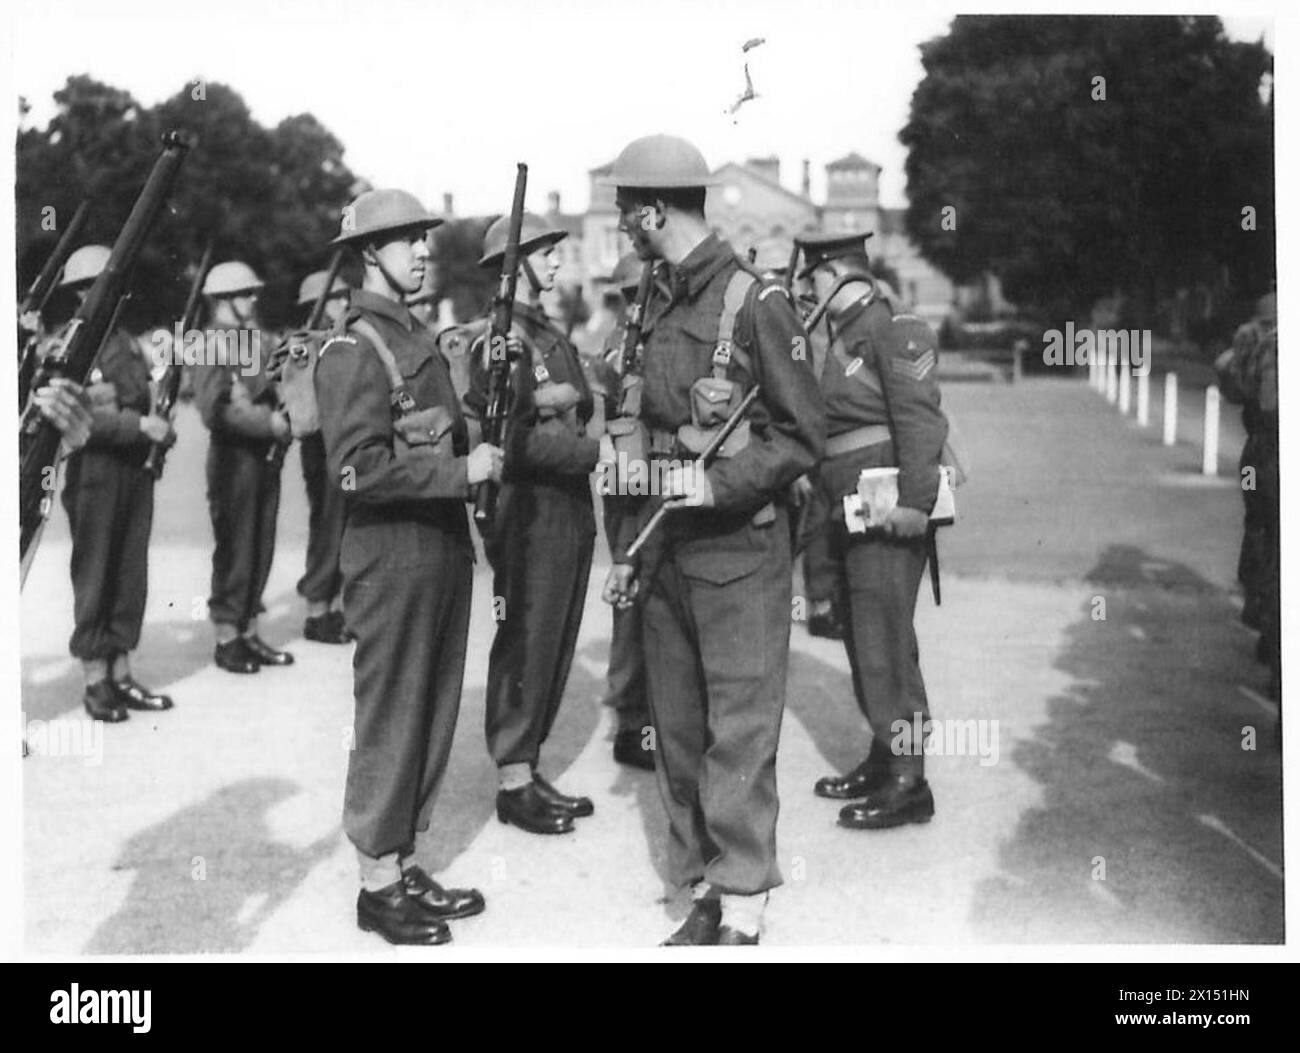 DAS SCHLOSS IN WINDSOR - Gewehrkontrolle an der Victoria Road, Windsor. Rekruten des Ausbildungsbataillons Grenadier Guards British Army Stockfoto